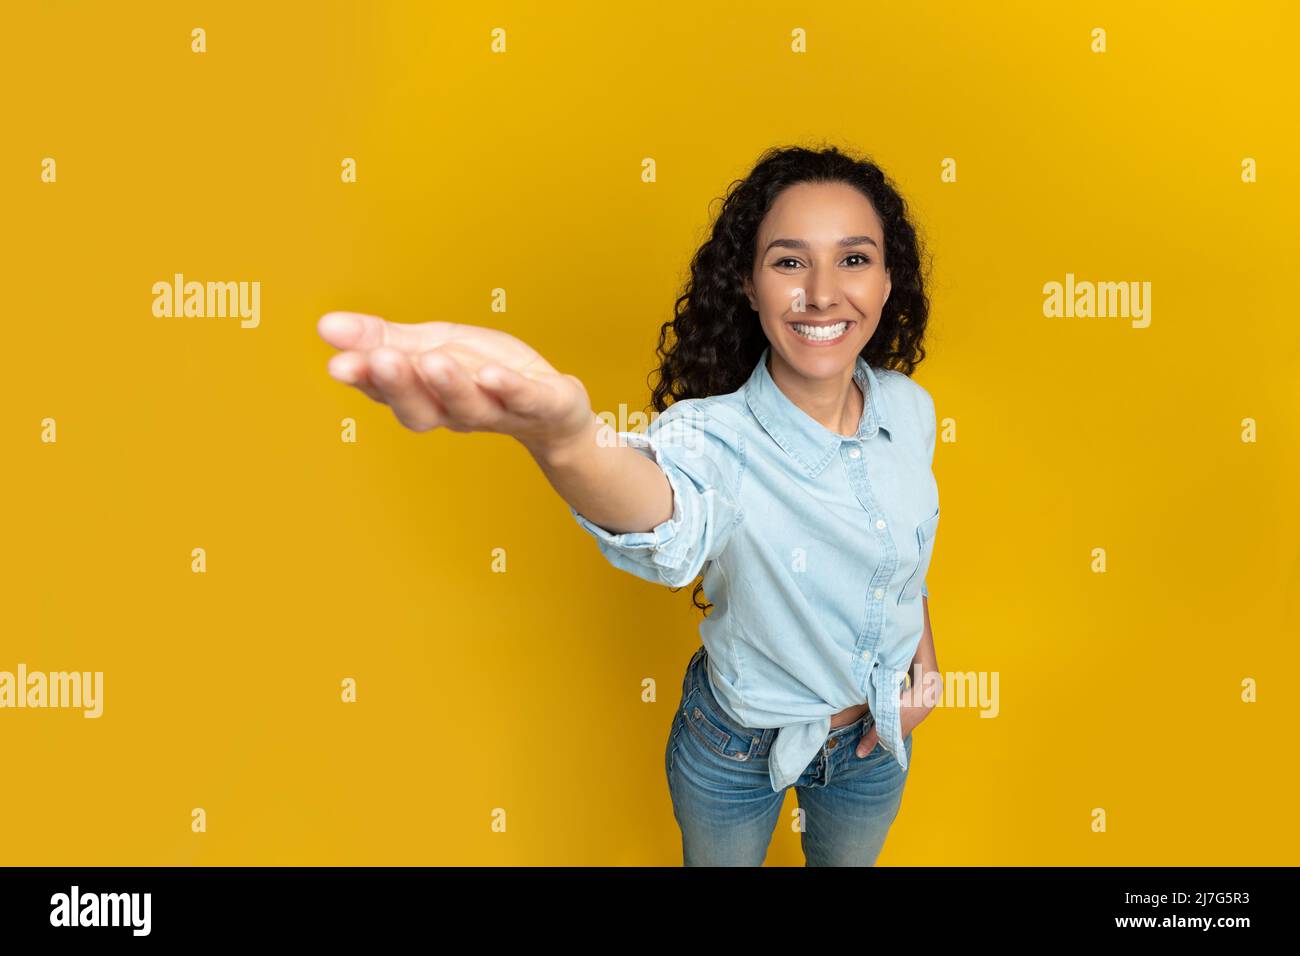 Lächelnde junge Frau, die die Hand ausstreckt und versucht, etwas zu halten Stockfoto